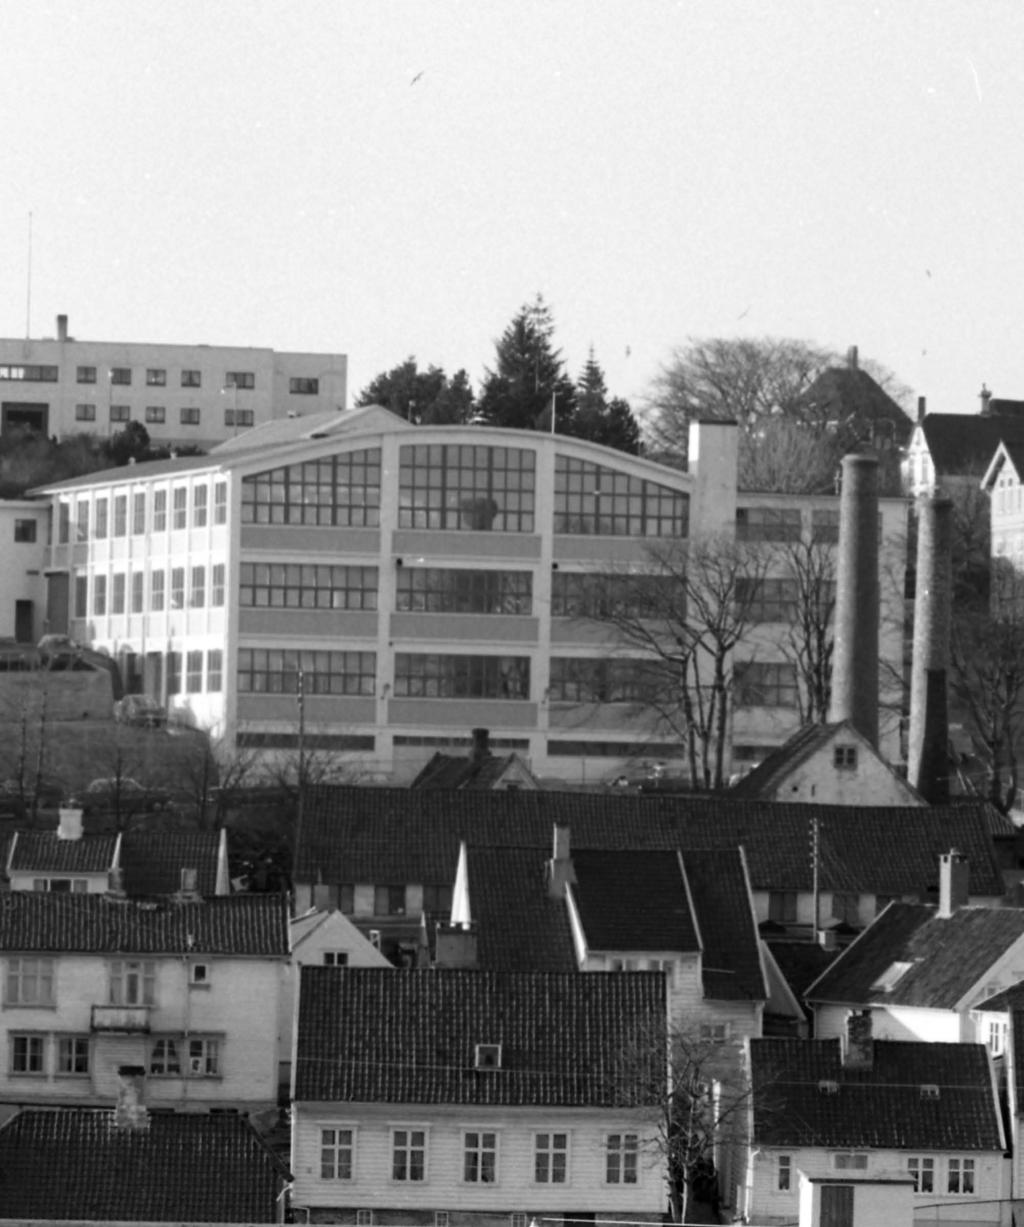 Visjon Siden Løkkeveien 97-99 stod ferdig i 1951, har bygningen stått markant frem i bybildet.